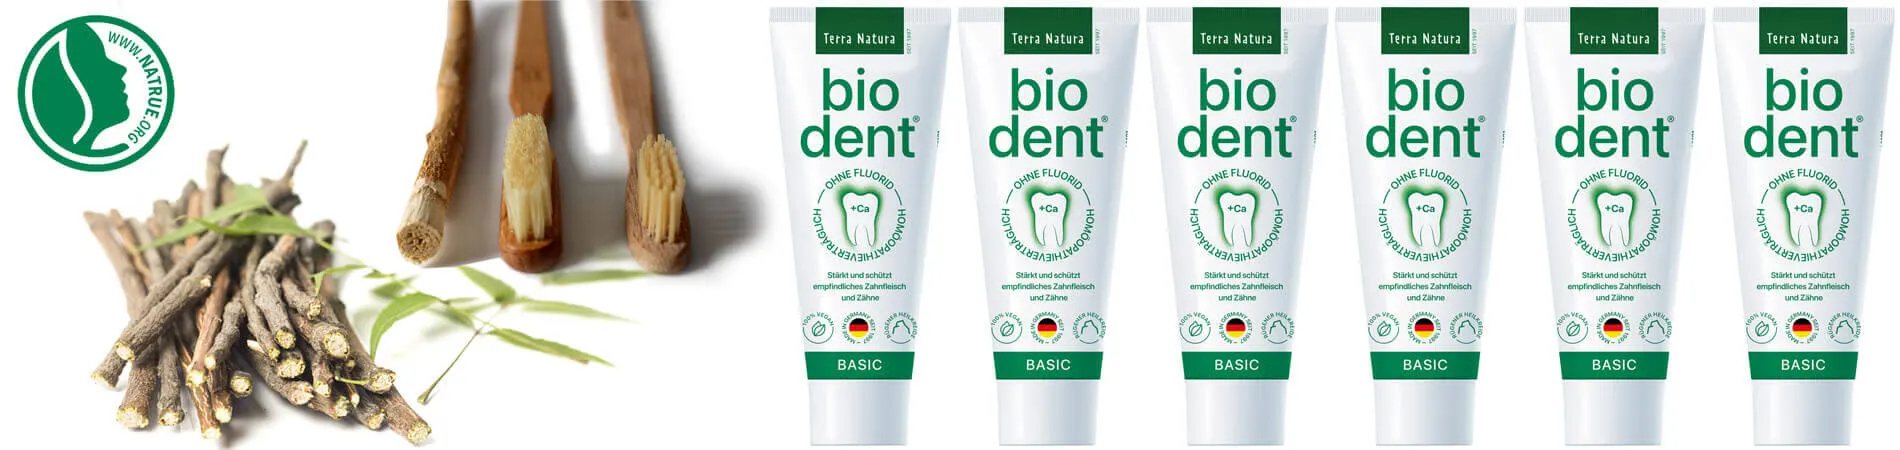 Biodent Basics Tandpasta zonder fluoride kopen Bio dent...